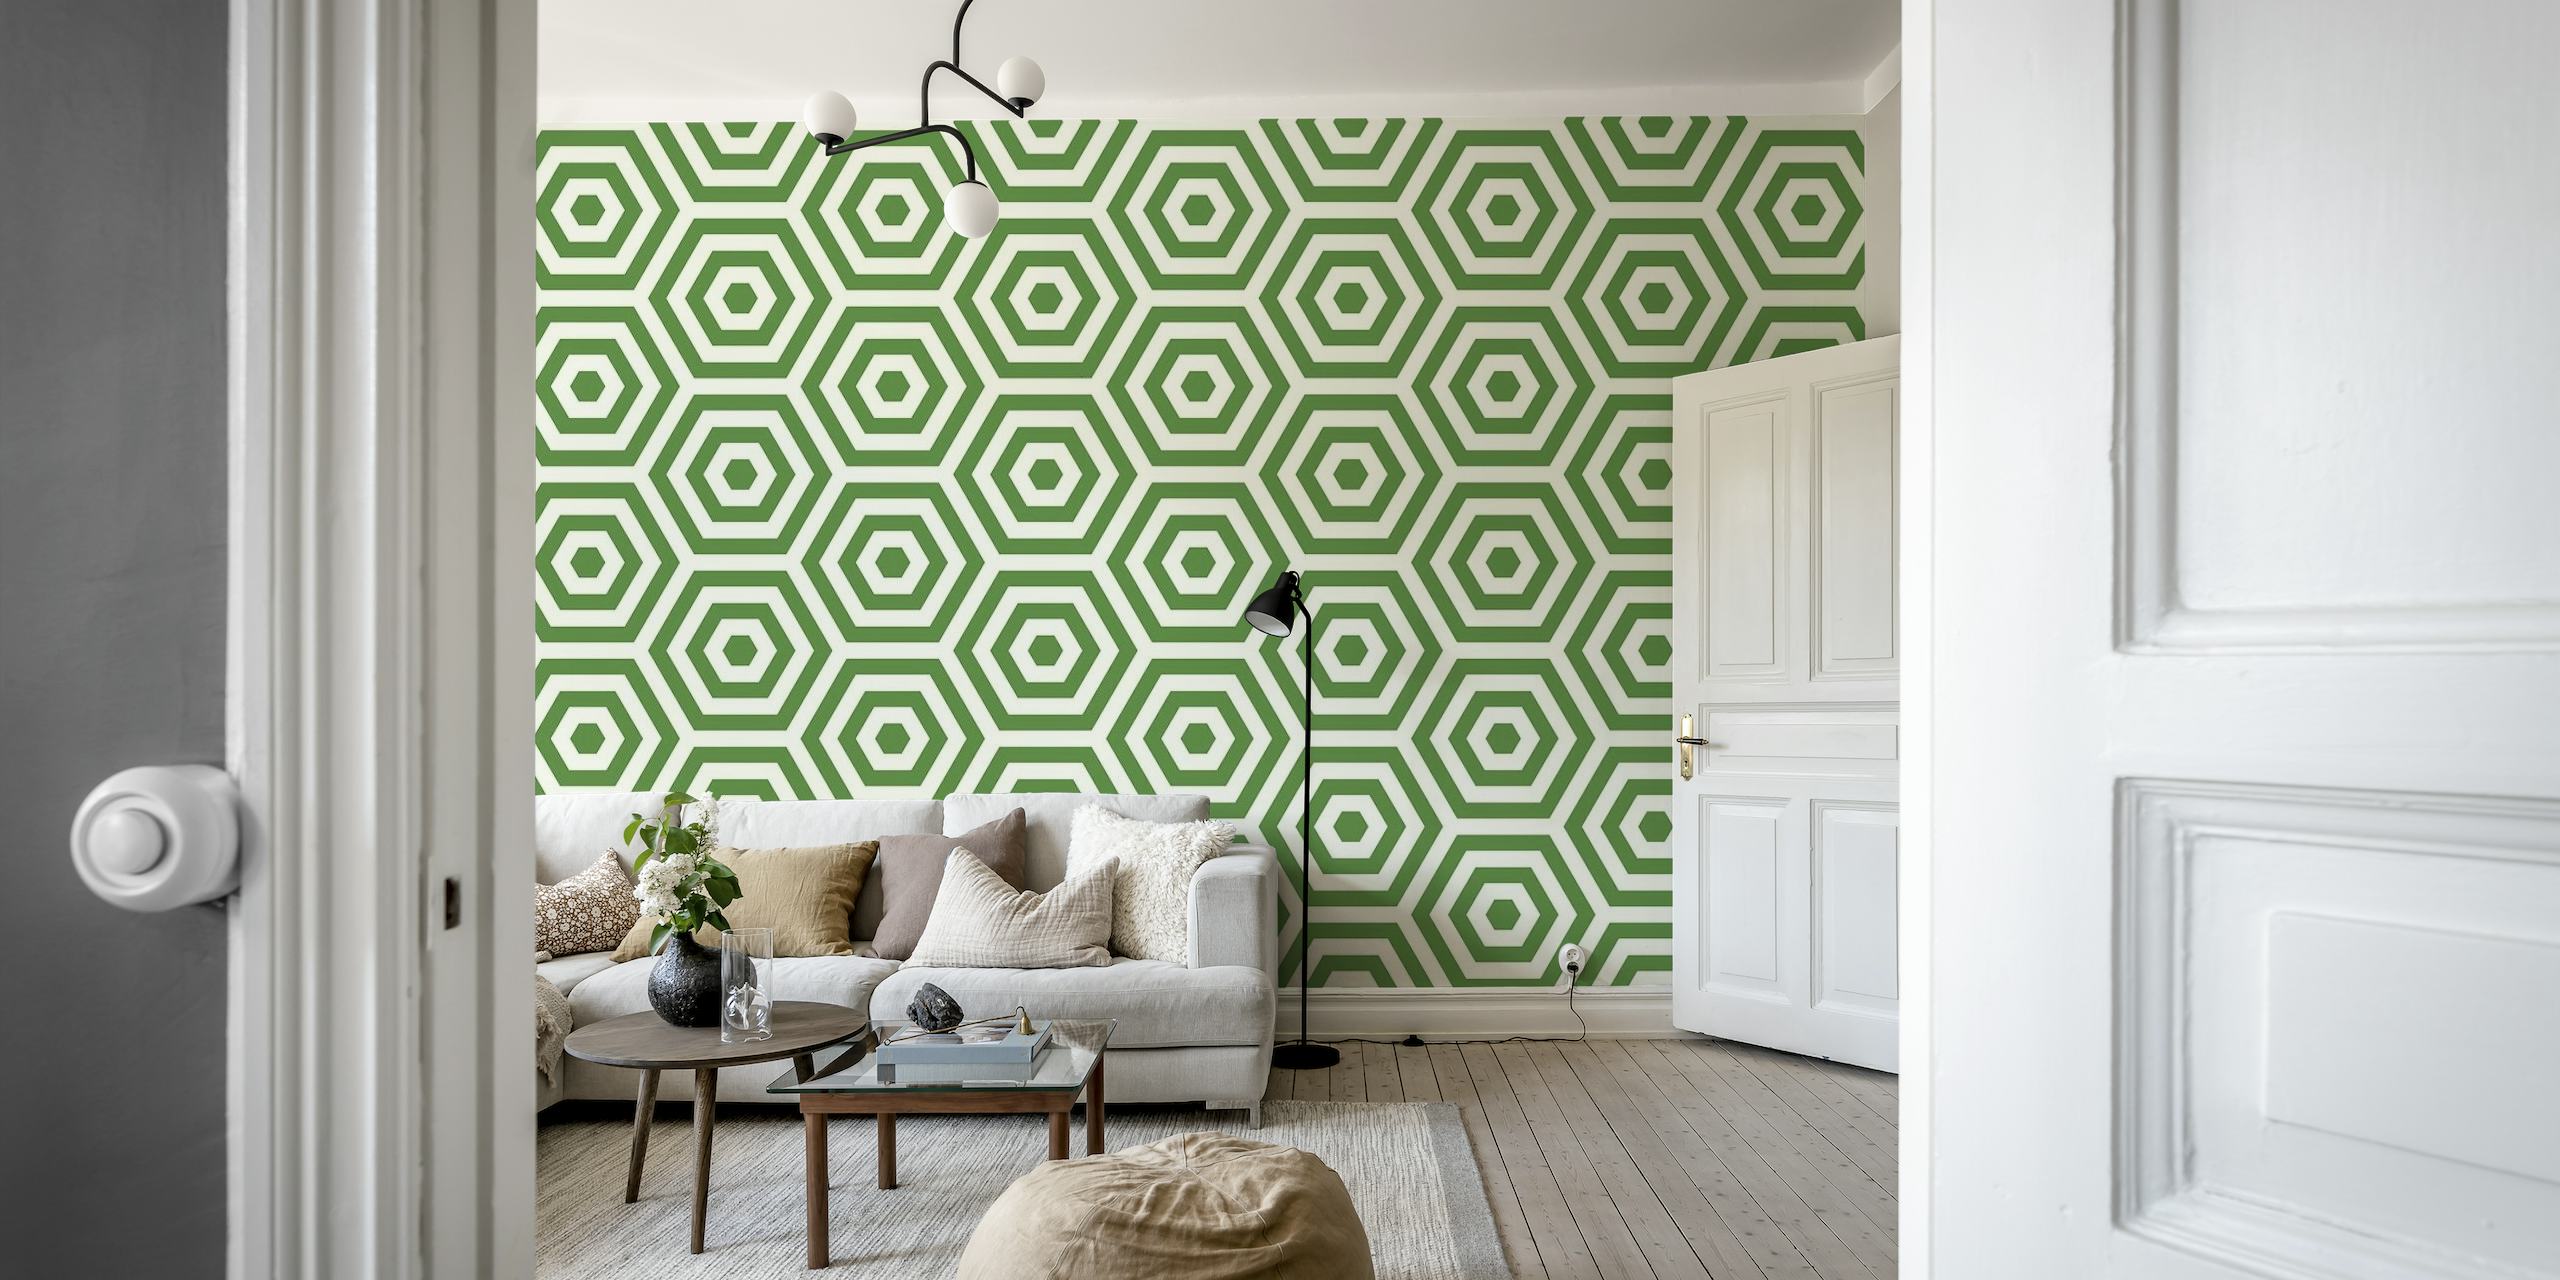 Groene bijenkorf-patroon muurschildering met zeshoekige vormen